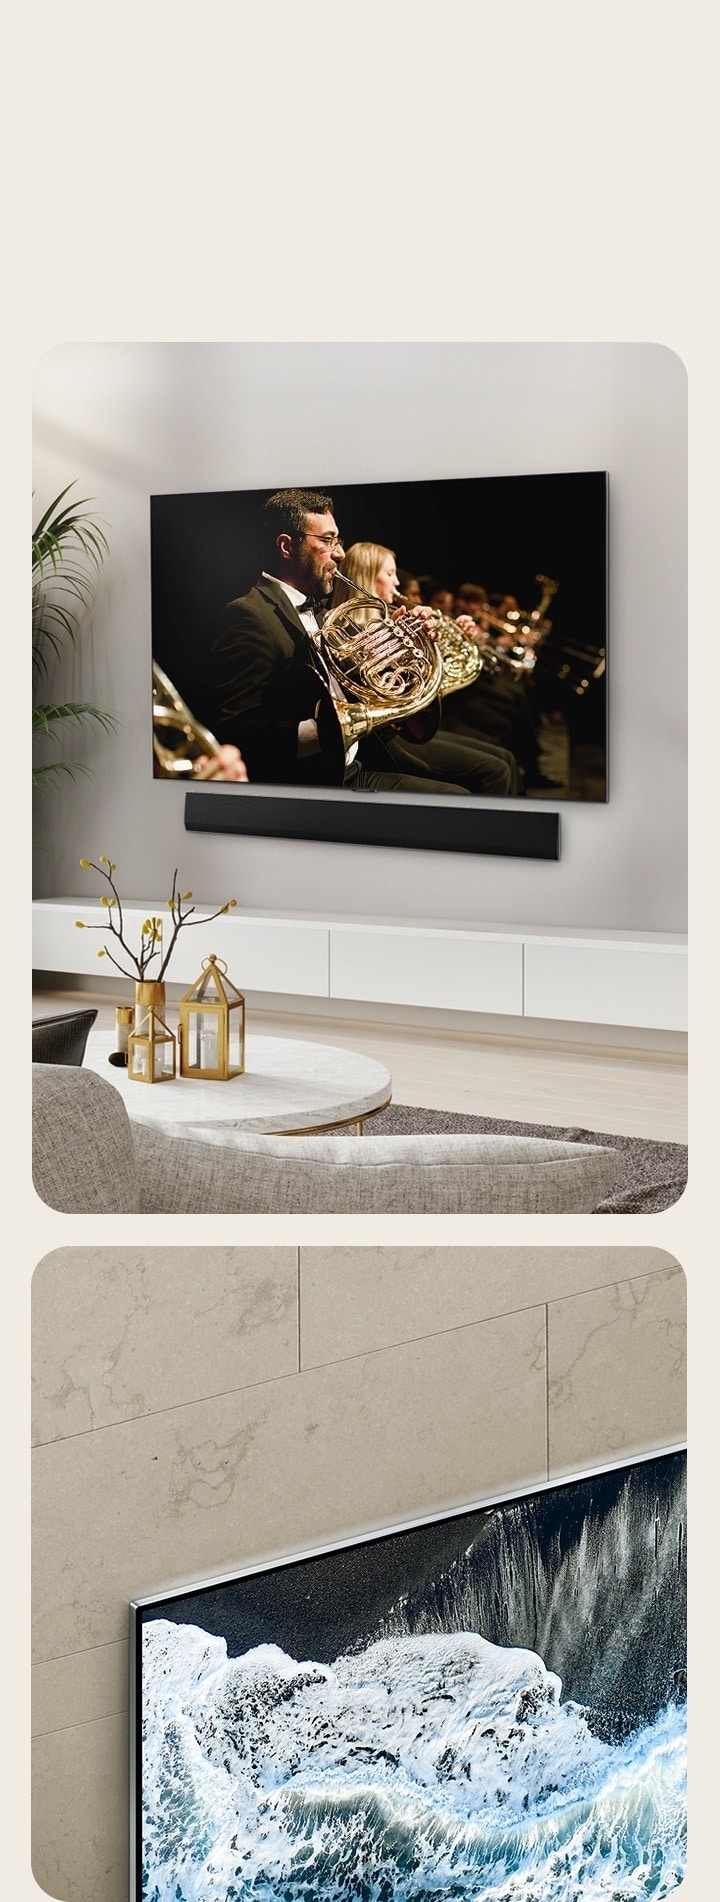 Ci sono due immagini che mostrano diverse angolazioni del TV OLED G4. In una è installato su una parete marmorizzata di un ambiente moderno. Sotto al TV c'è la soundbar e l'effetto complessivo è di un TV perfettamente a filo del muro.   Nella seconda immagine, si vede solo l'angolo del TV per enfatizzare l'installazione elegante sulla parete piastrellata.